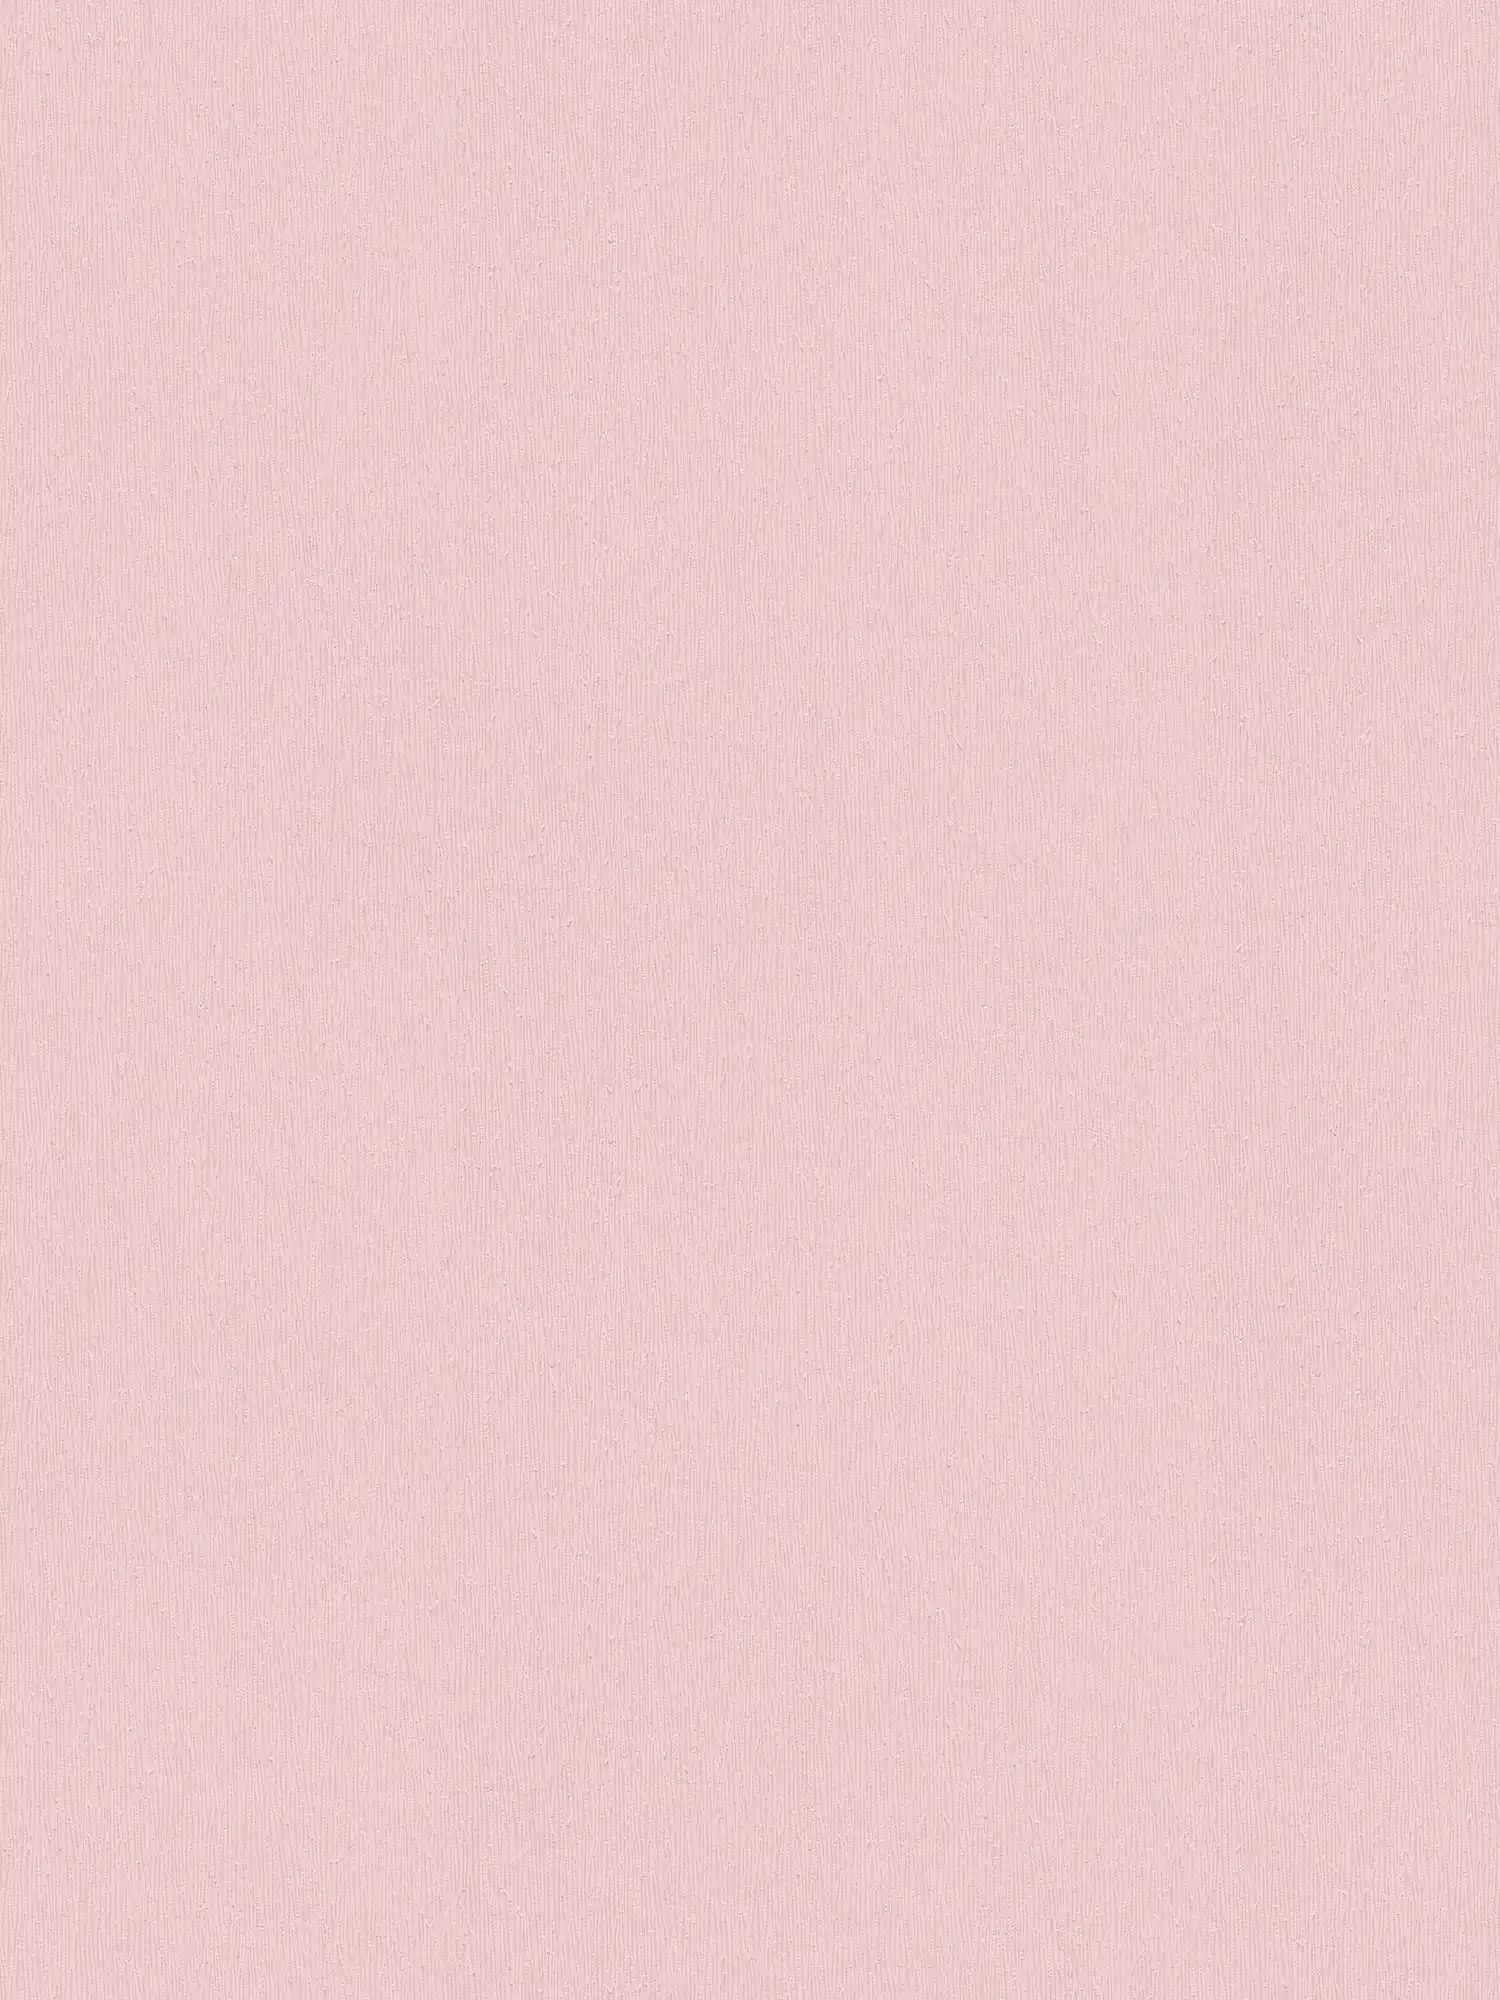 Baby Roze Vliesbehang met Monochroom Textuur Ontwerp - Roze
